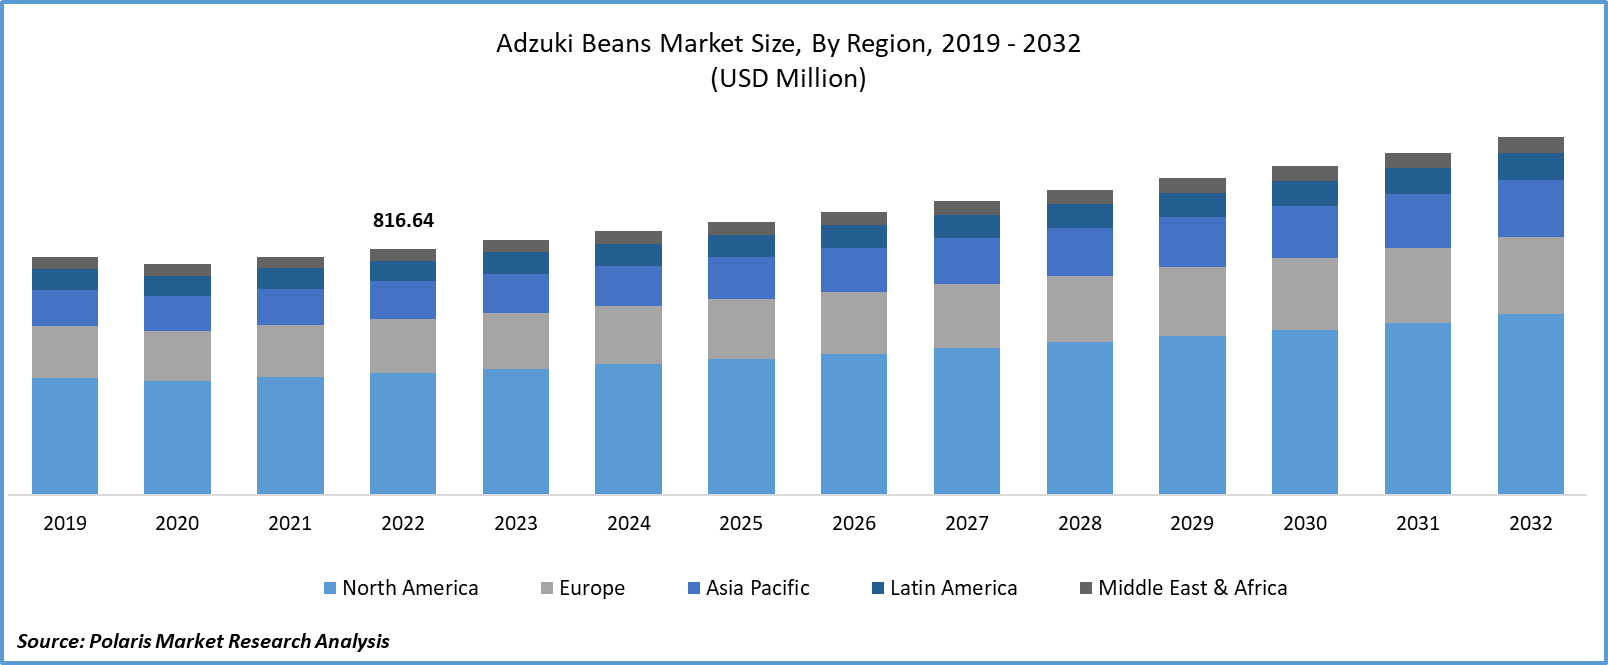 Adzuki Beans Market Size